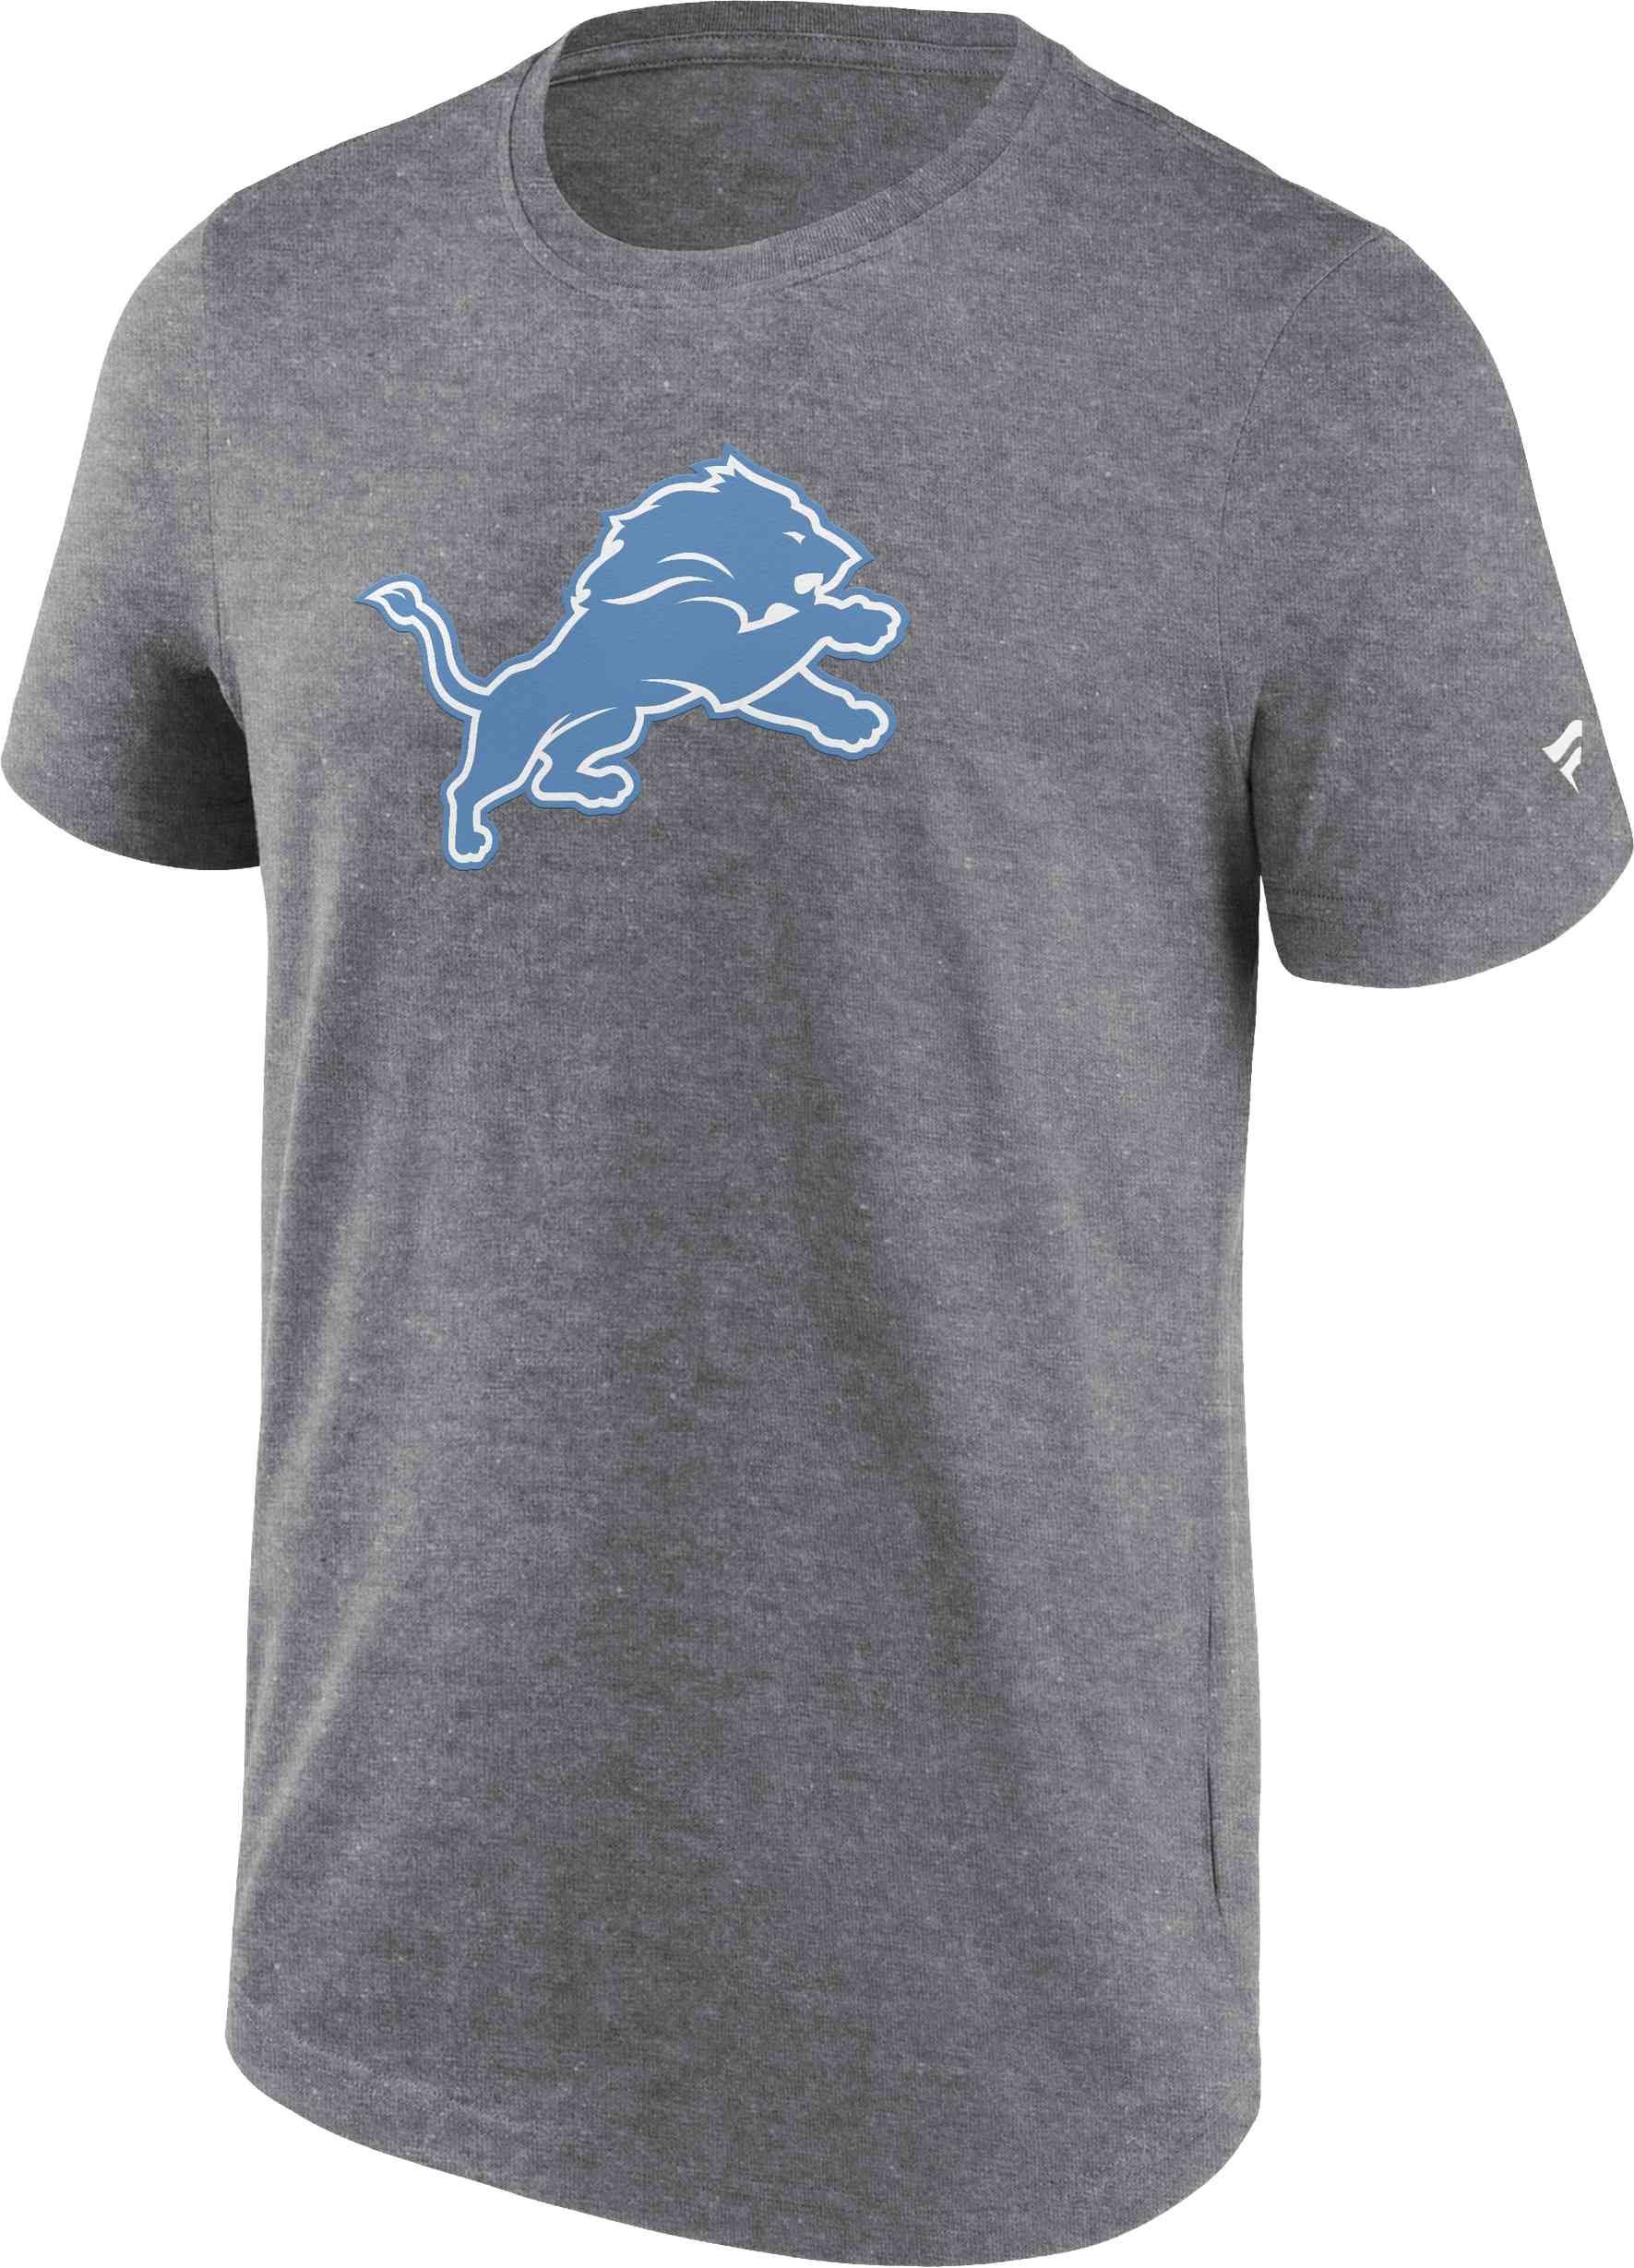 Fanatics T-Shirt NFL Detroit Graphic Lions Logo Primary